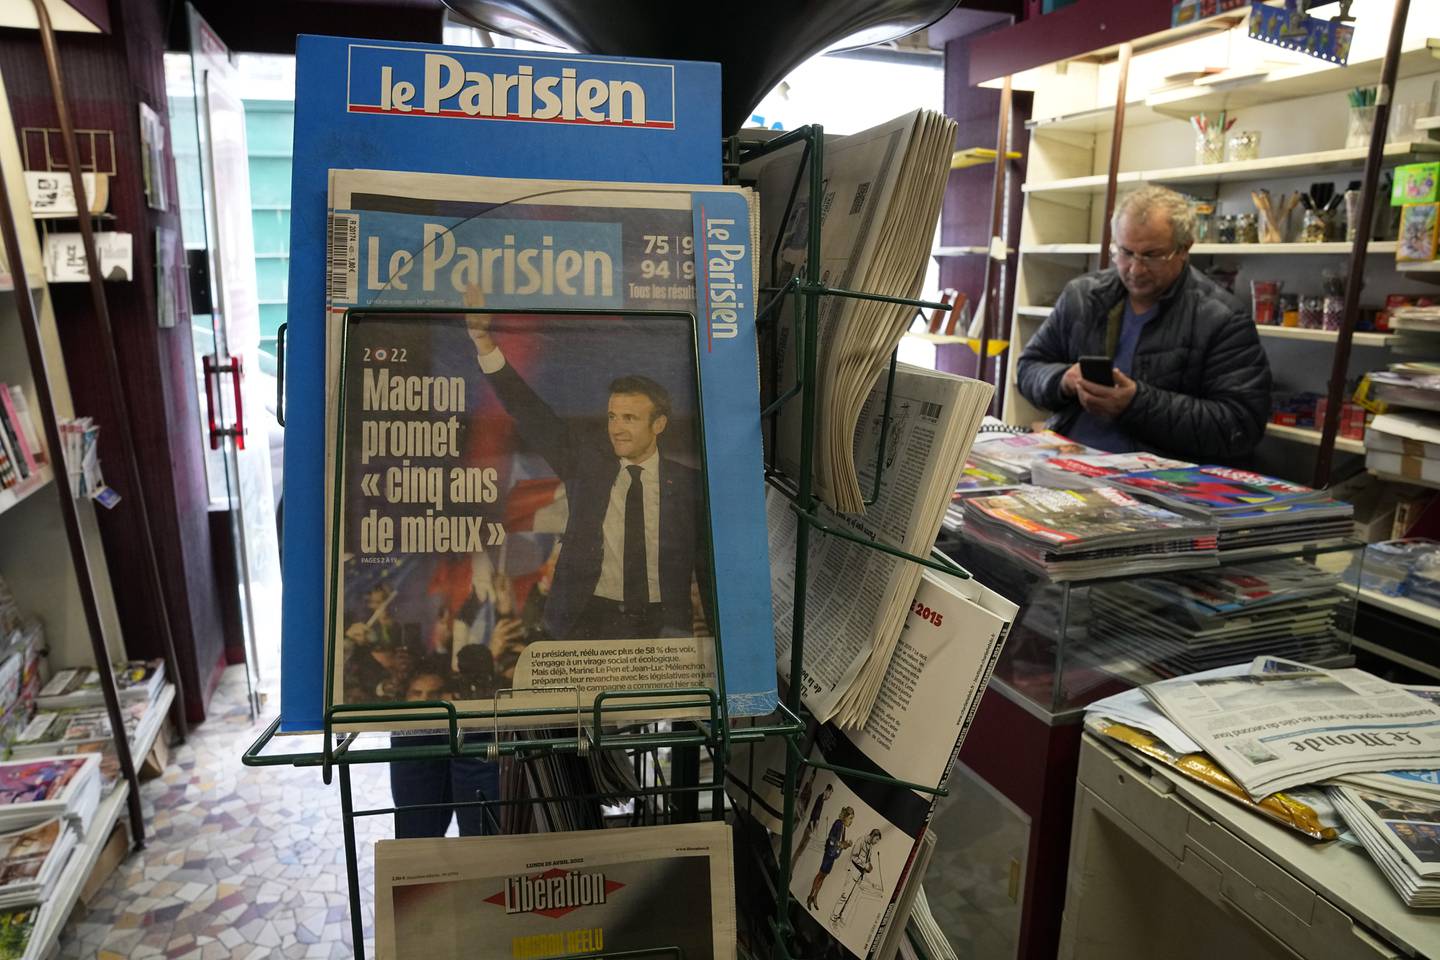 Forsida til avisa Le Parisien med teksten "Macron lover fem bedre år".